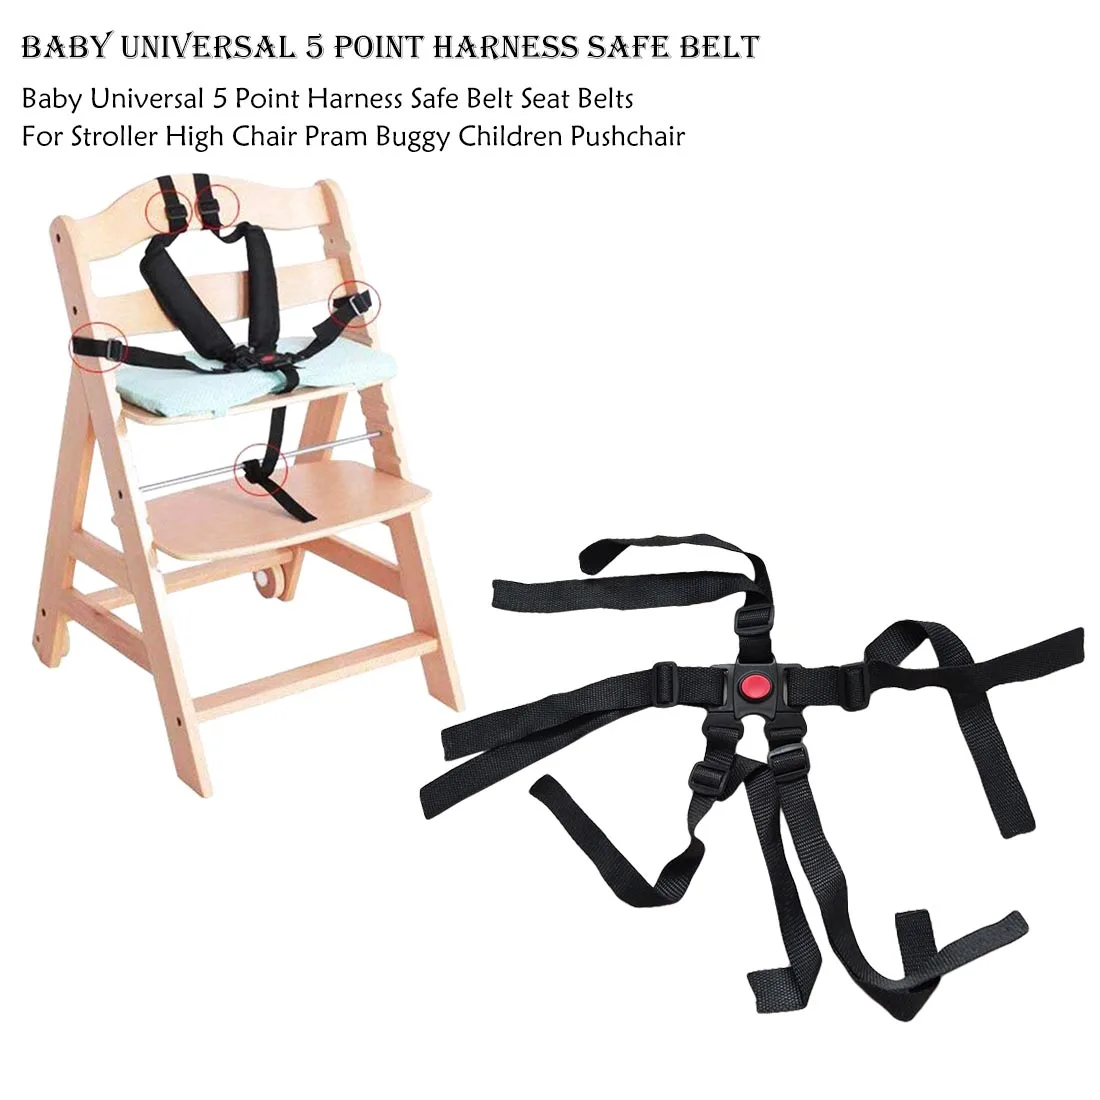 Для коляски, стульчик для кормления, коляска, безопасная, простая в использовании, аксессуары для коляски, Детские универсальные 5 точечные ремни безопасности, ремни безопасности